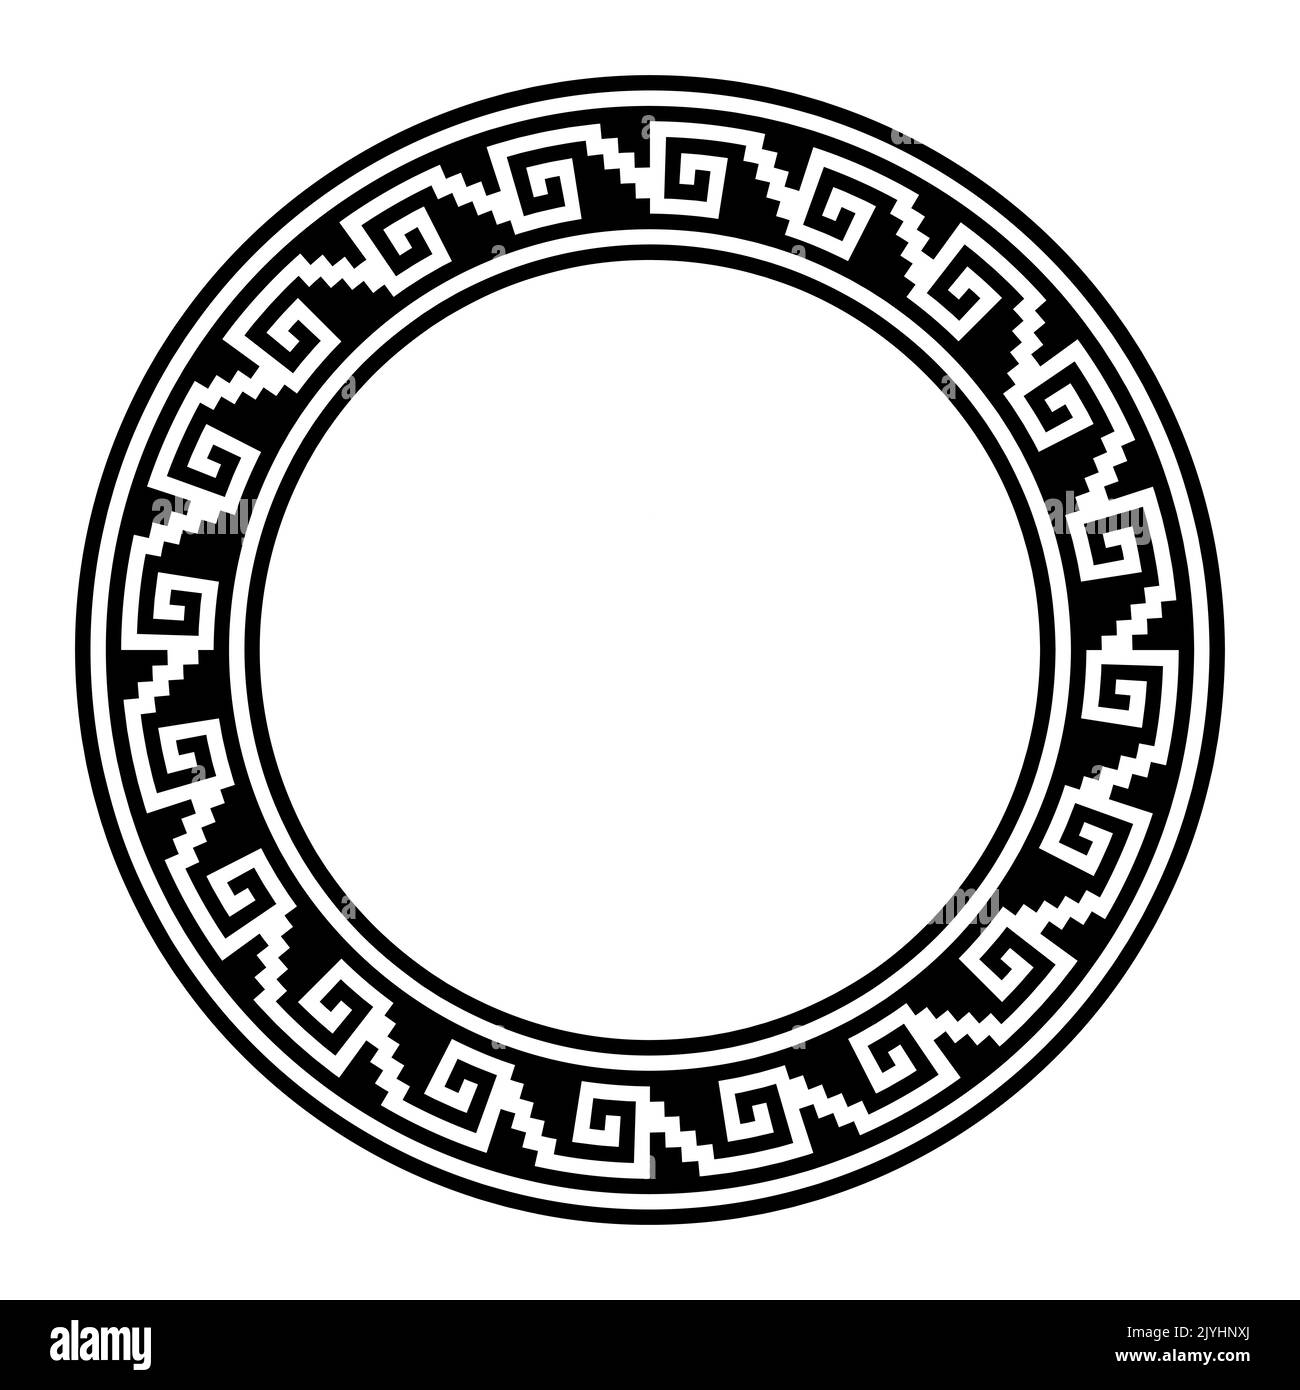 Motivo de traste azteca escalonada, marco circular con patrón de meandro. Borde hecho de escalones, sin costuras conectado a un gancho o espiral, similar a la llave griega. Foto de stock